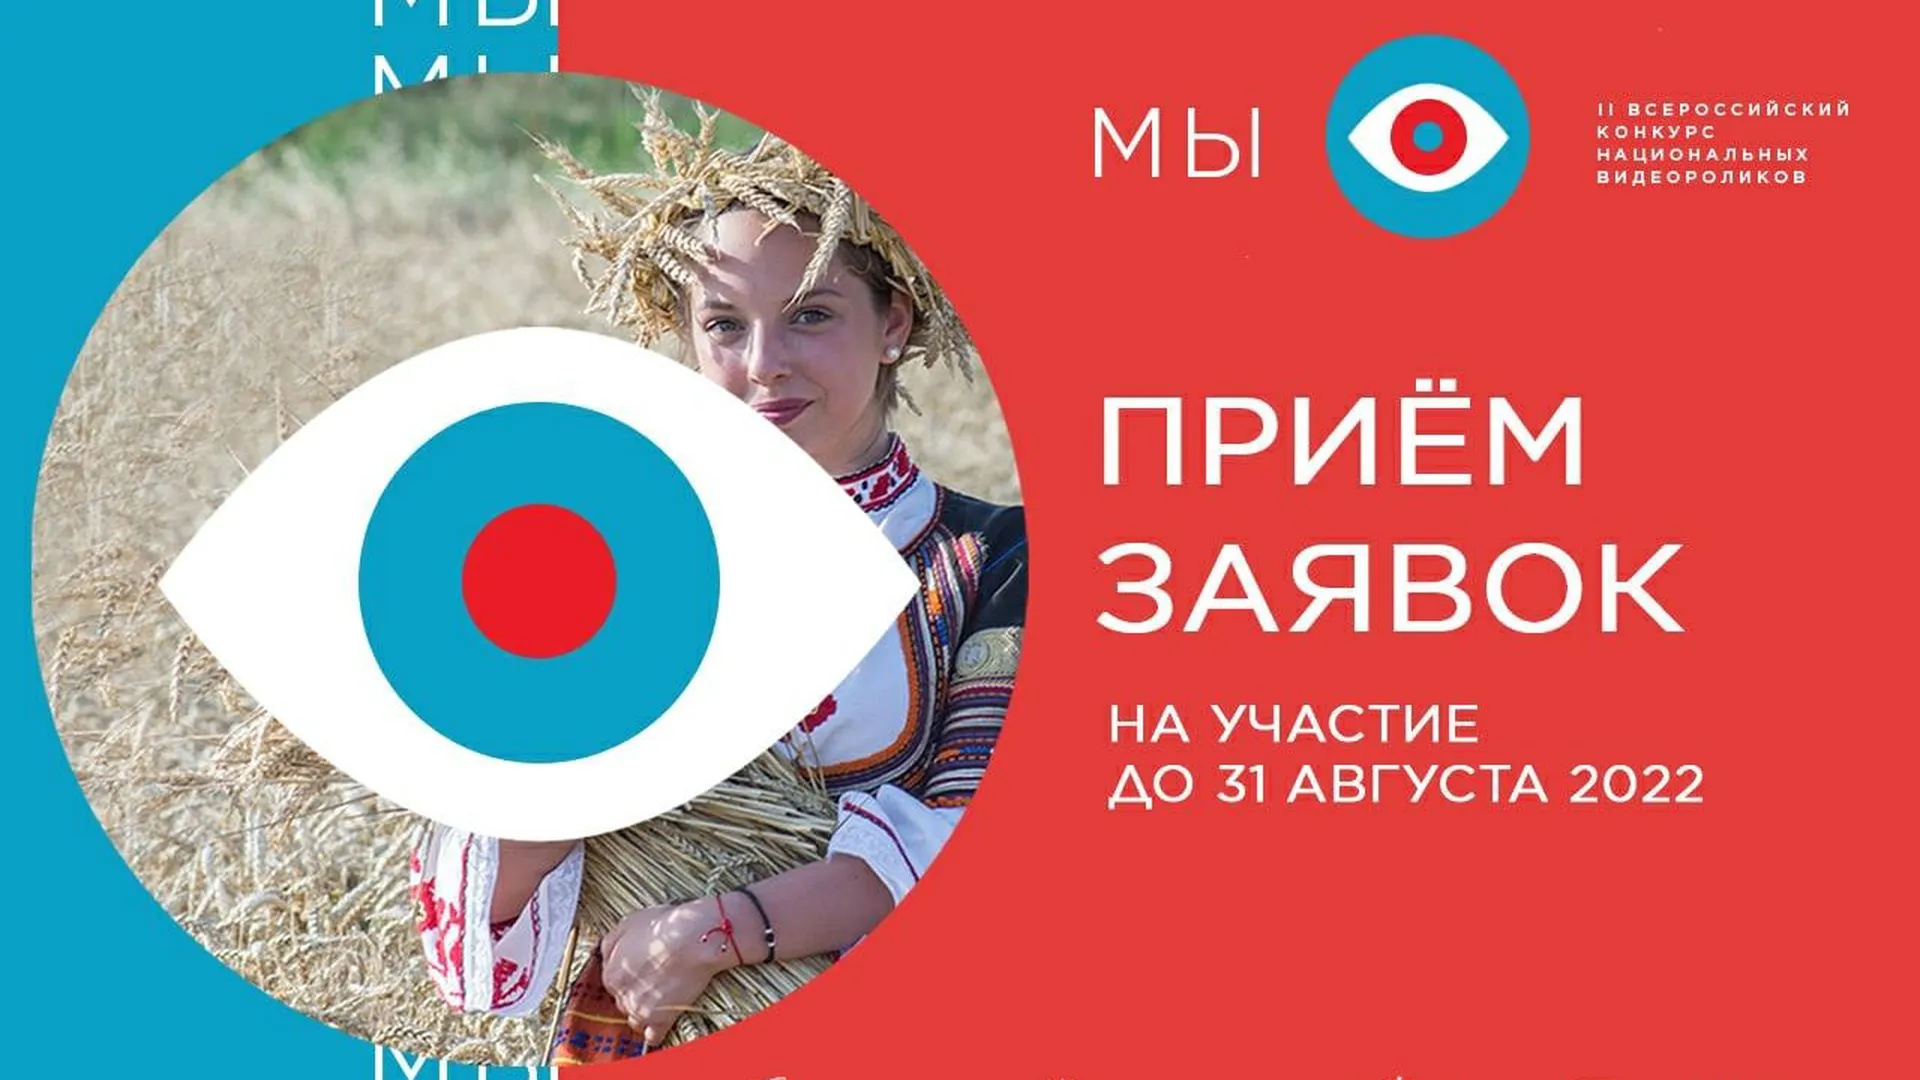 страница конкурса "МЫ" в соцсети "Вконтакте"